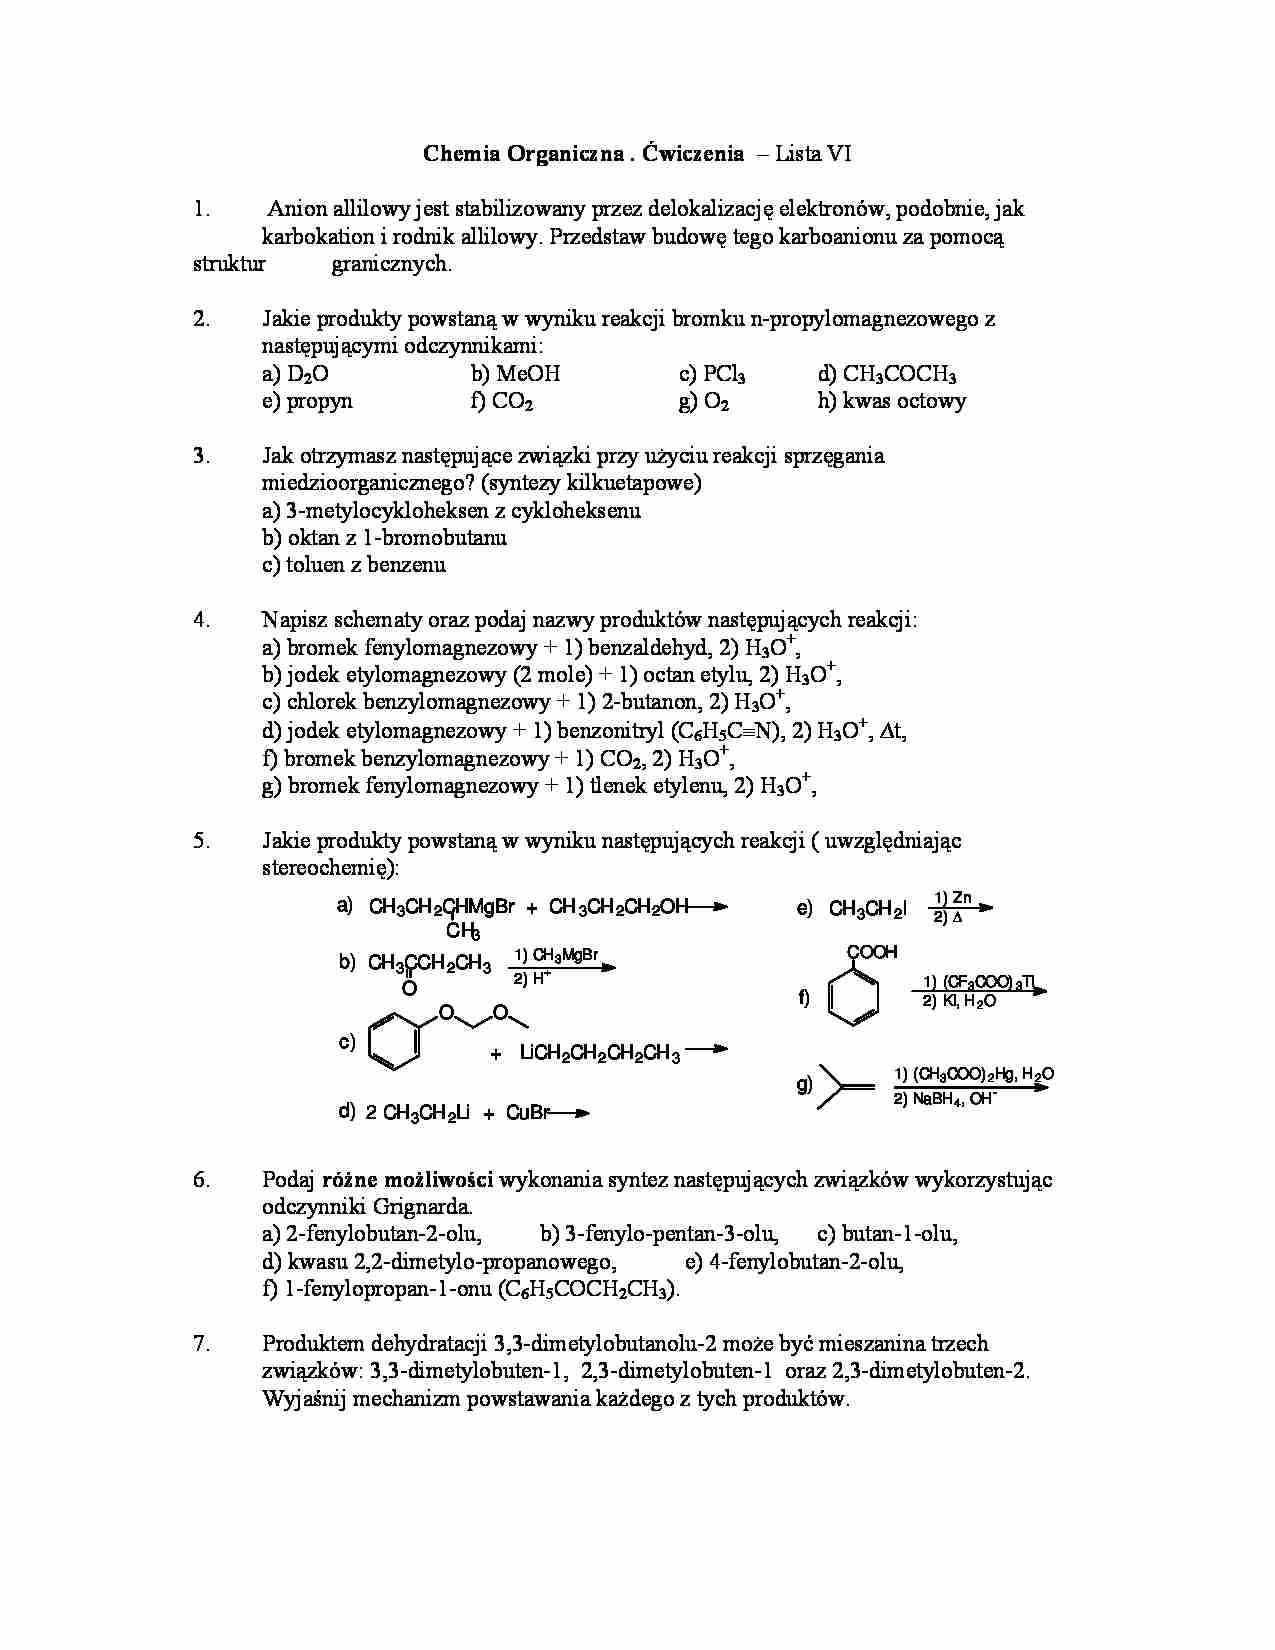 Chemia organiczna - ćwiczenia, lista VI - strona 1